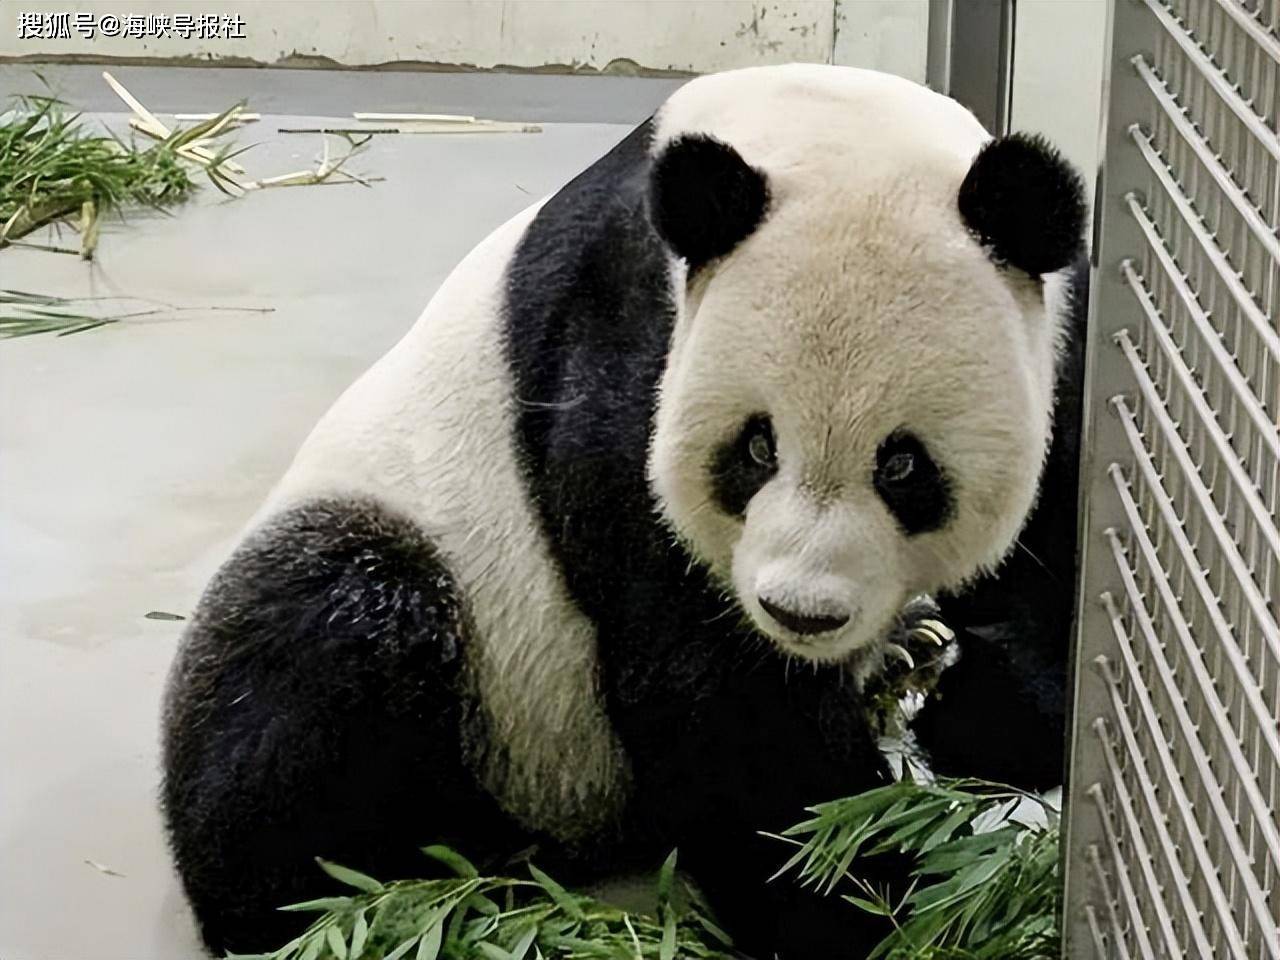 台北动物园“团团”发作给药后发作症状仍持续